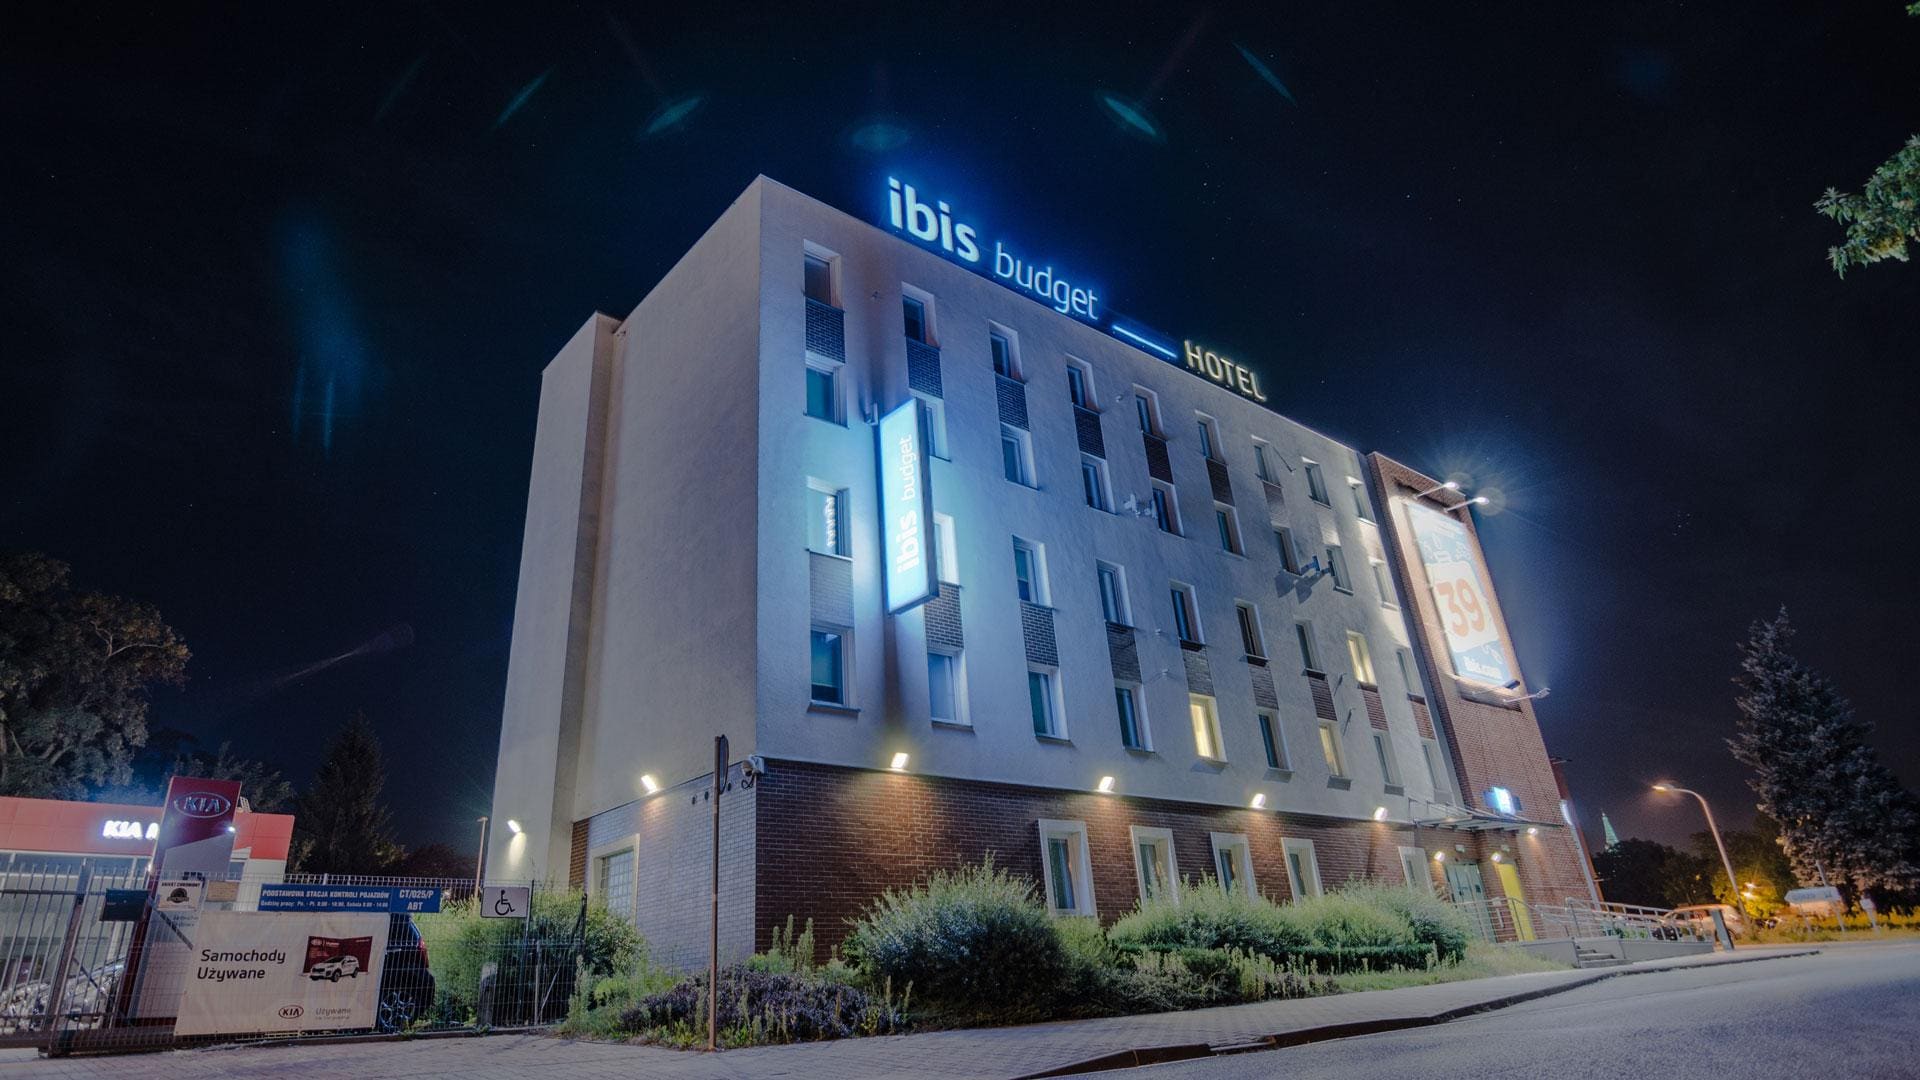 Ibis budget hotel